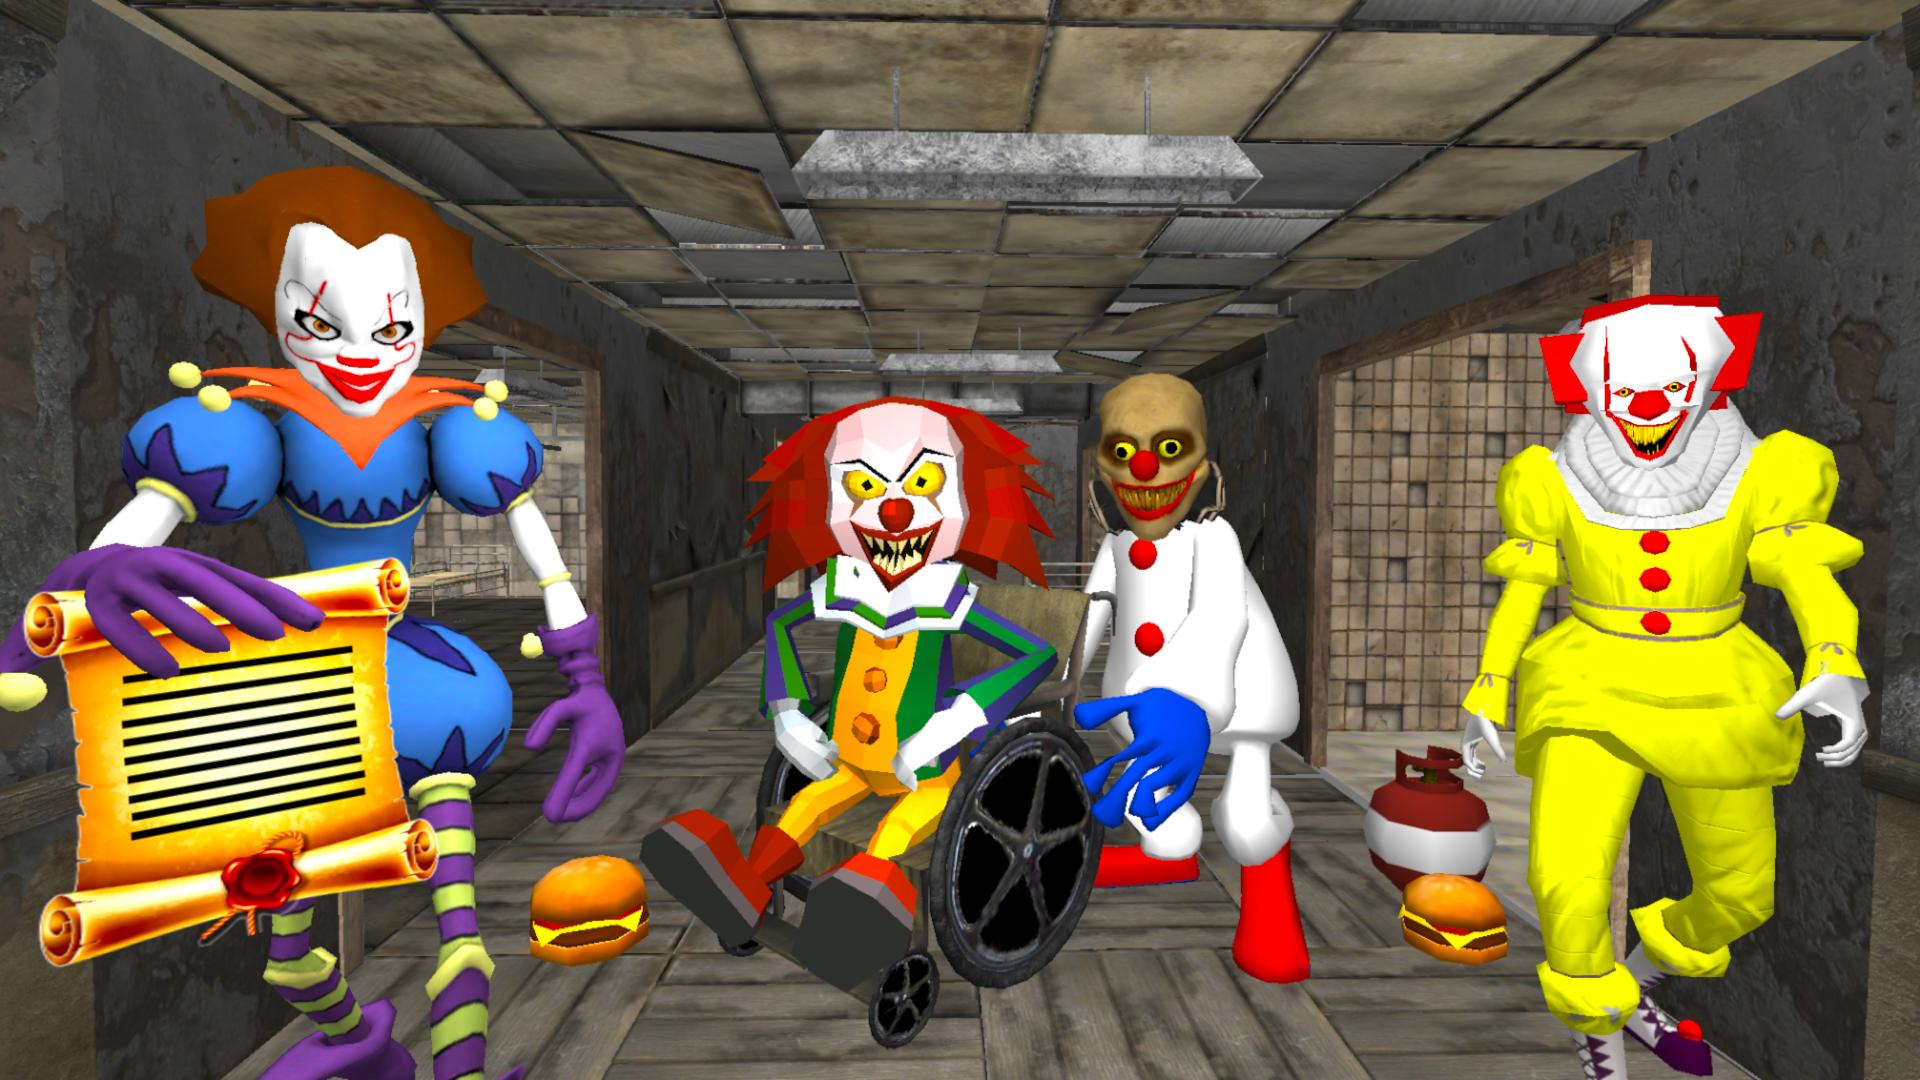 Клоун 2 играть. Клоун госпиталь нейбор Эскейп 3 д. Клоун сосед Эскейп. Сосед клоун нейбор. Clown Hospital Neighbor Escape 3d клоун.